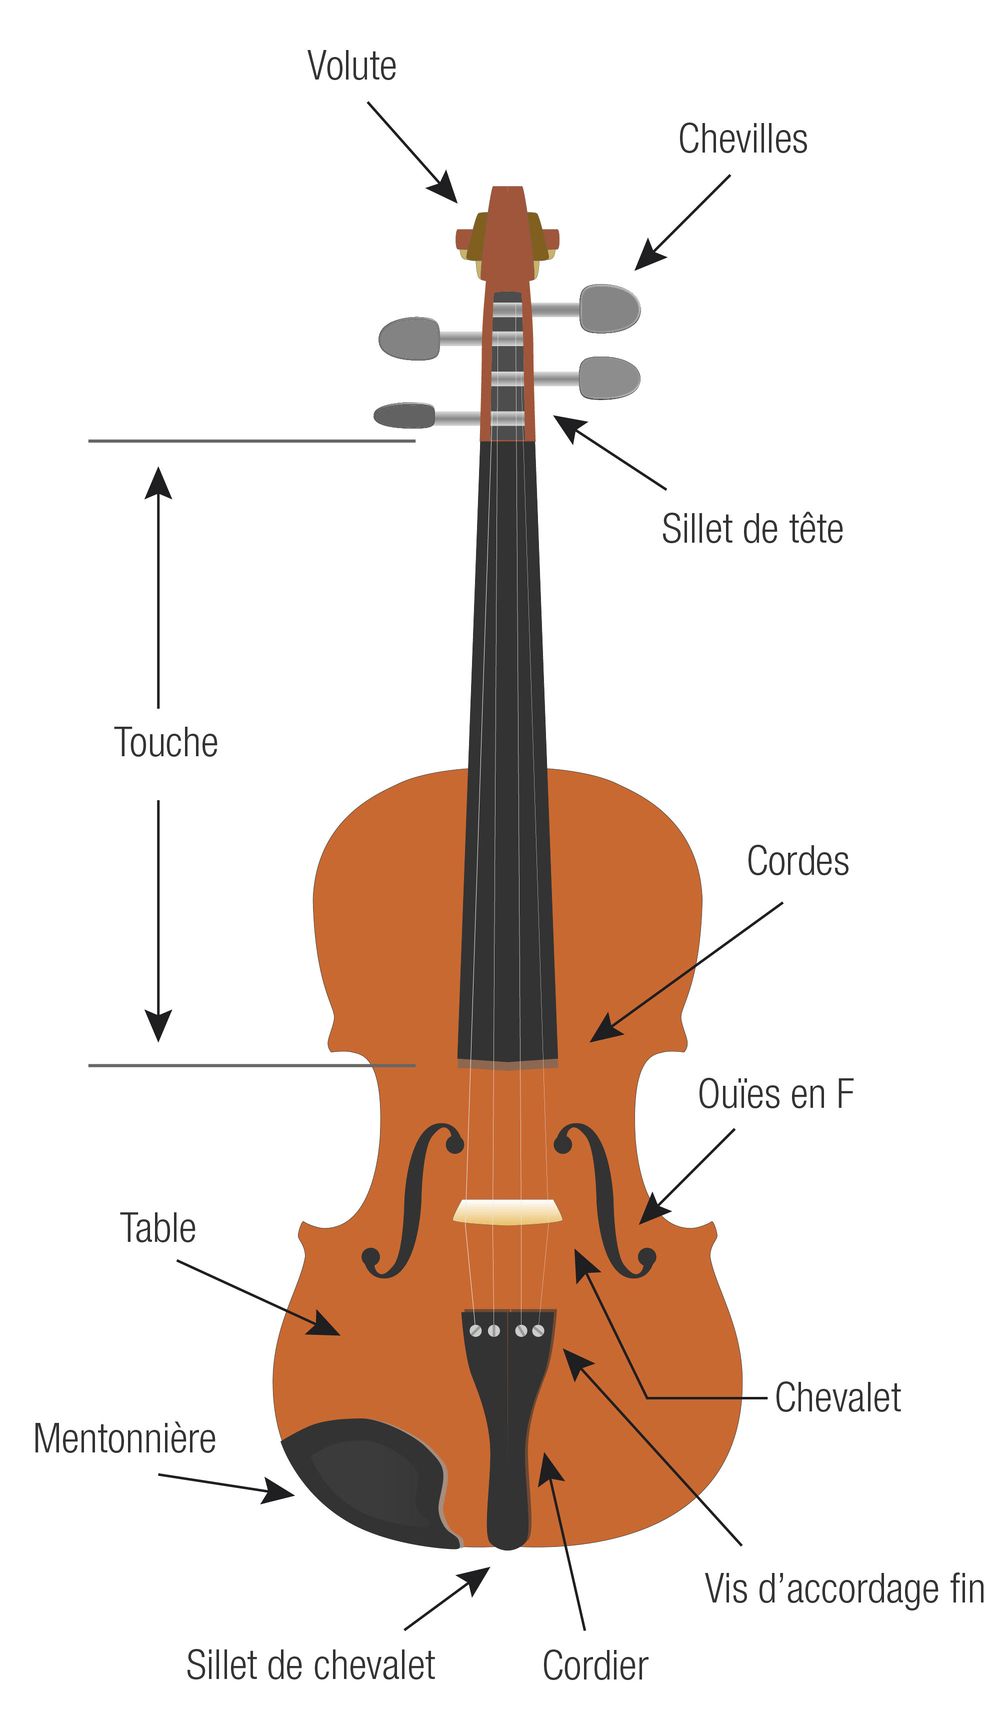 4 conseils pour entretenir votre violon et votre violoncelle